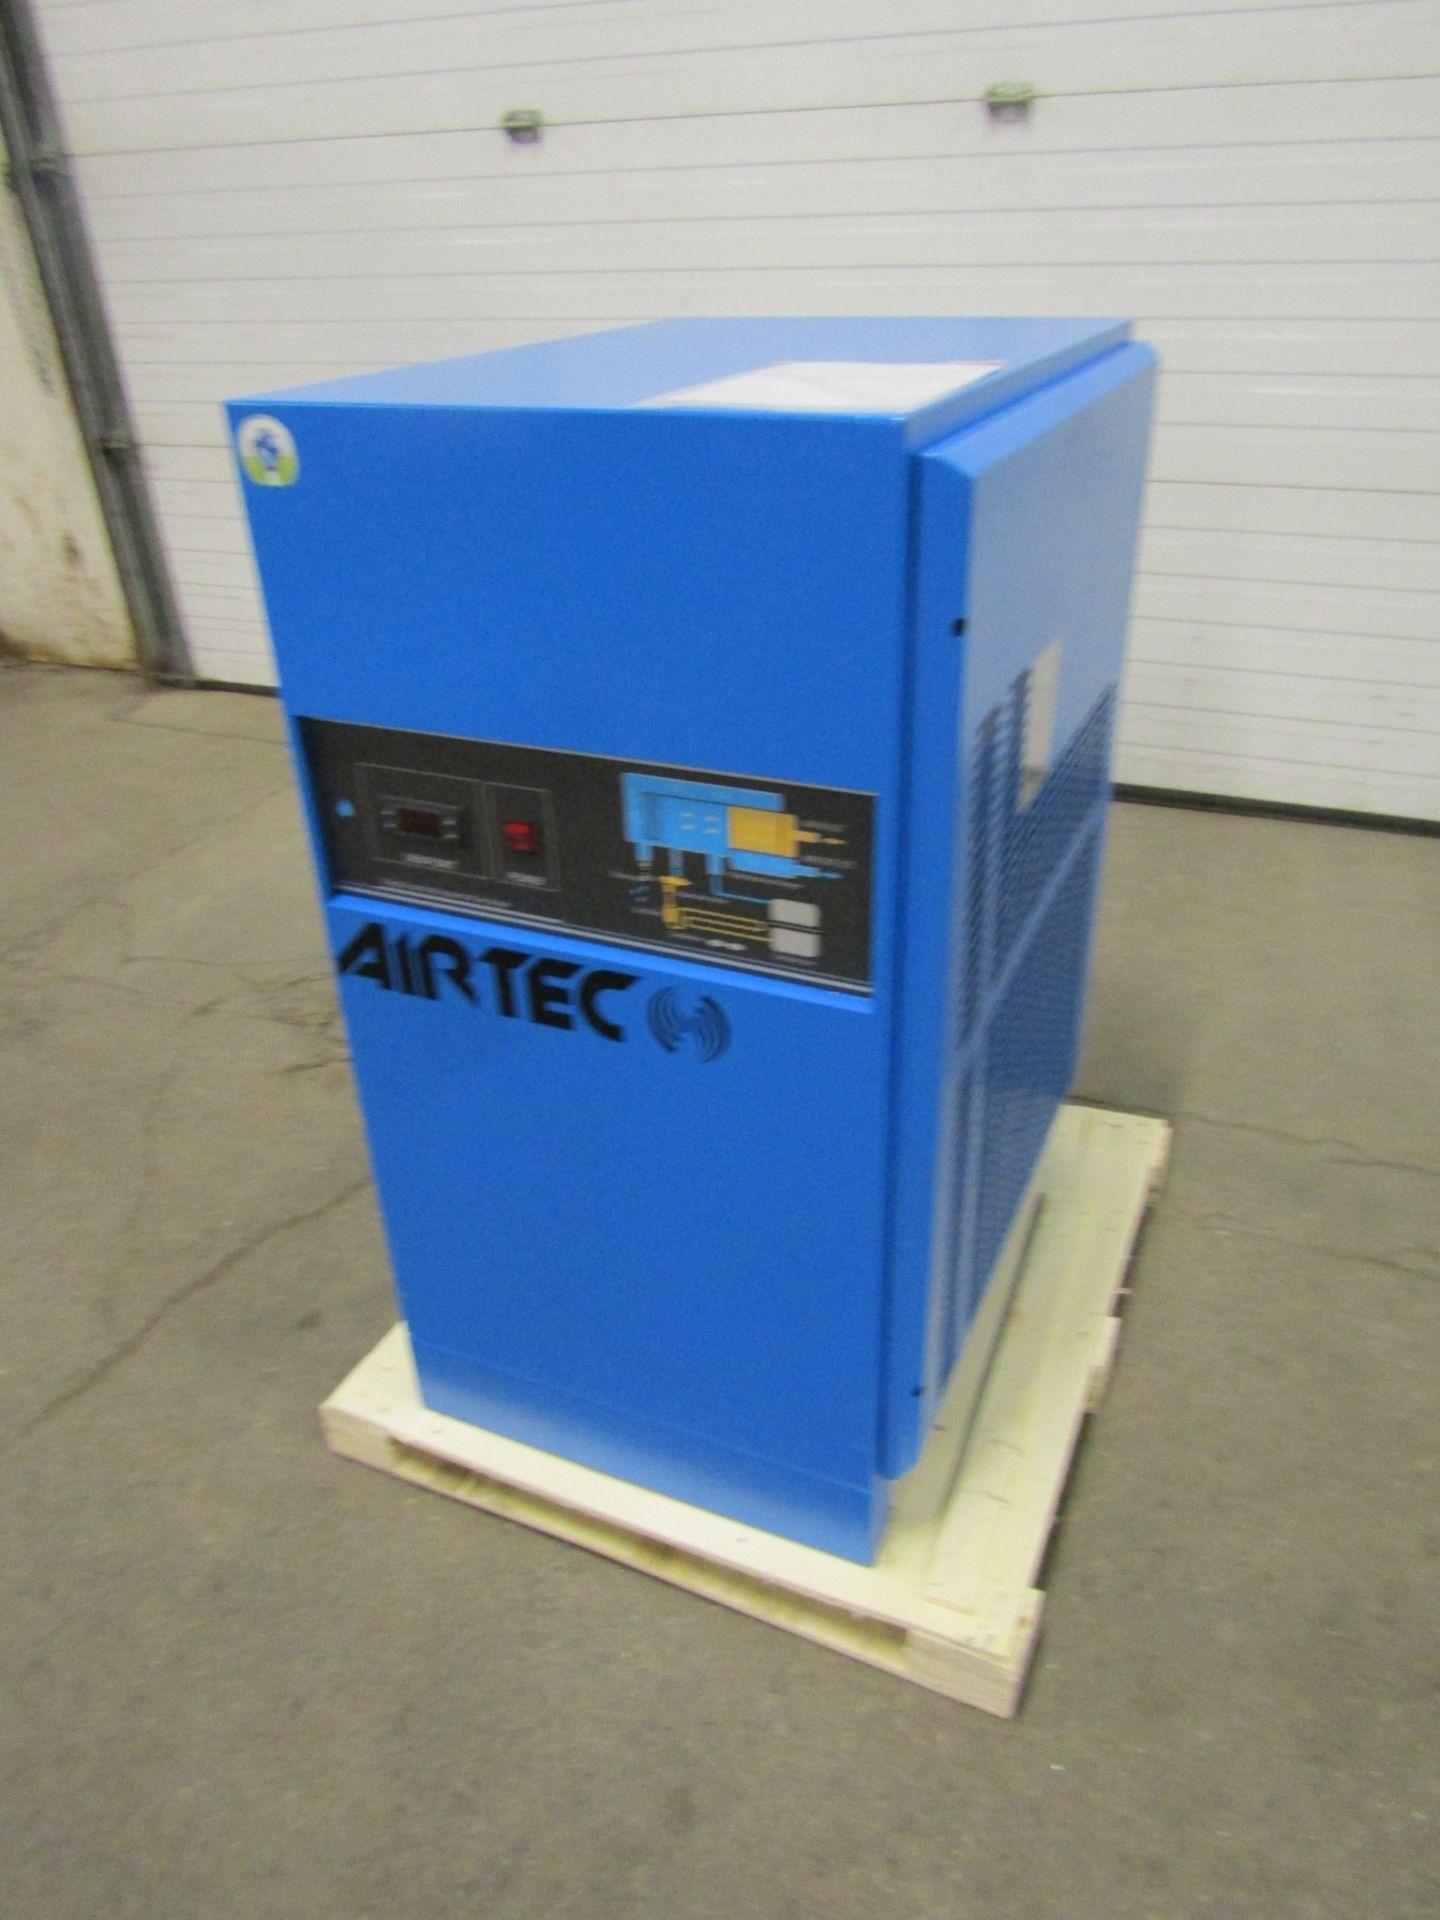 MINT Airtec Compressed Air Dryer 229 CFM Unused new unit